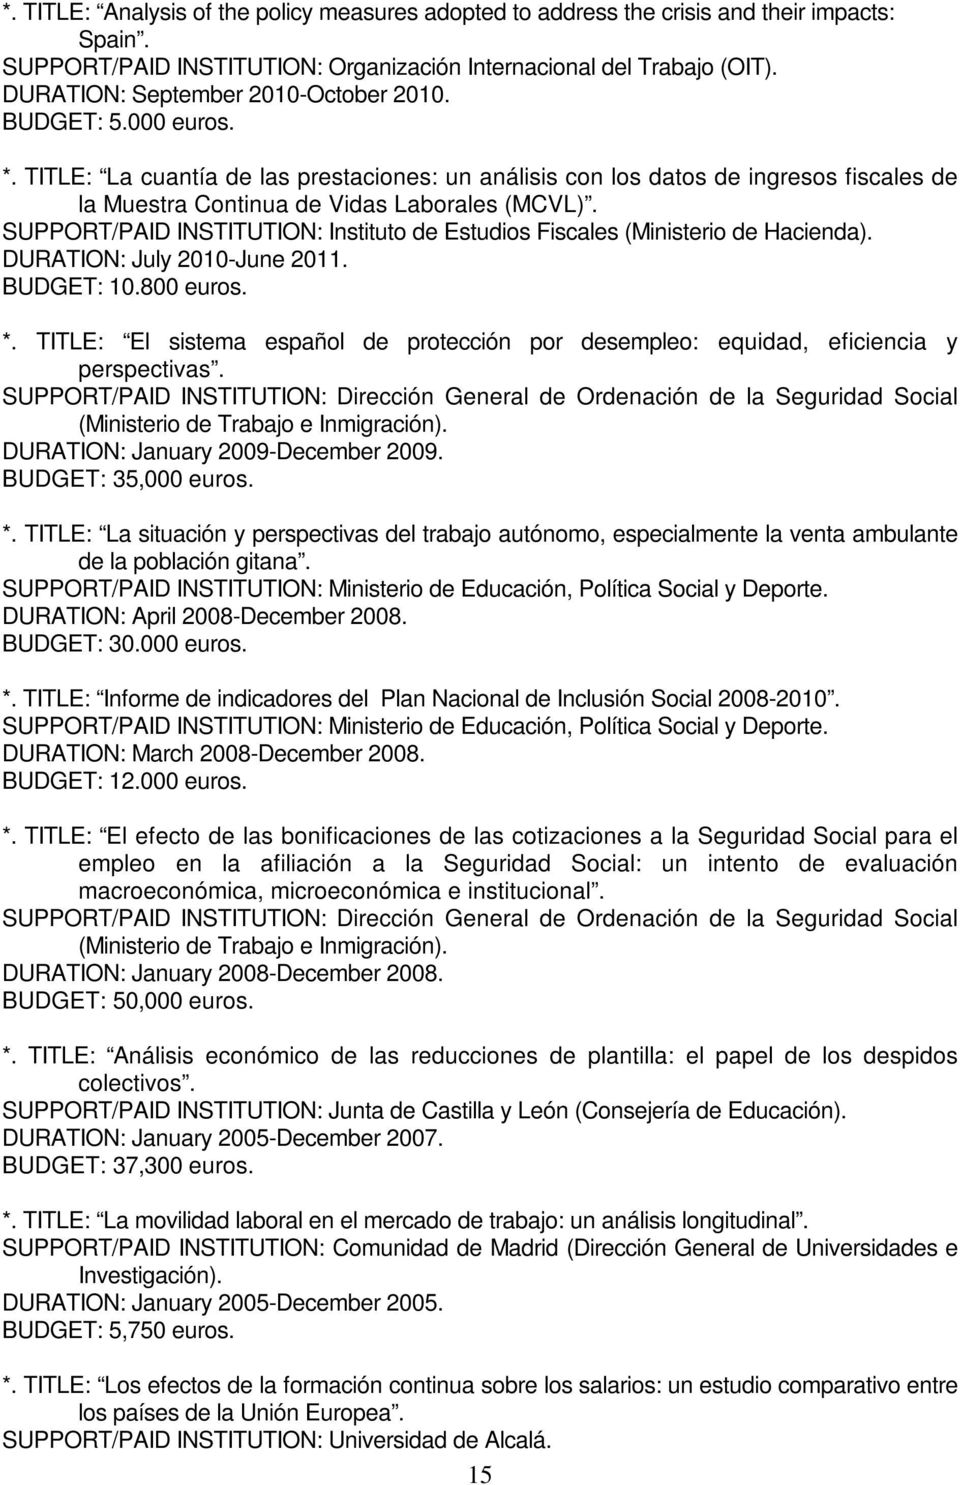 SUPPORT/PAID INSTITUTION: Instituto de Estudios Fiscales (Ministerio de Hacienda). DURATION: July 2010-June 2011. BUDGET: 10.800 euros. *.